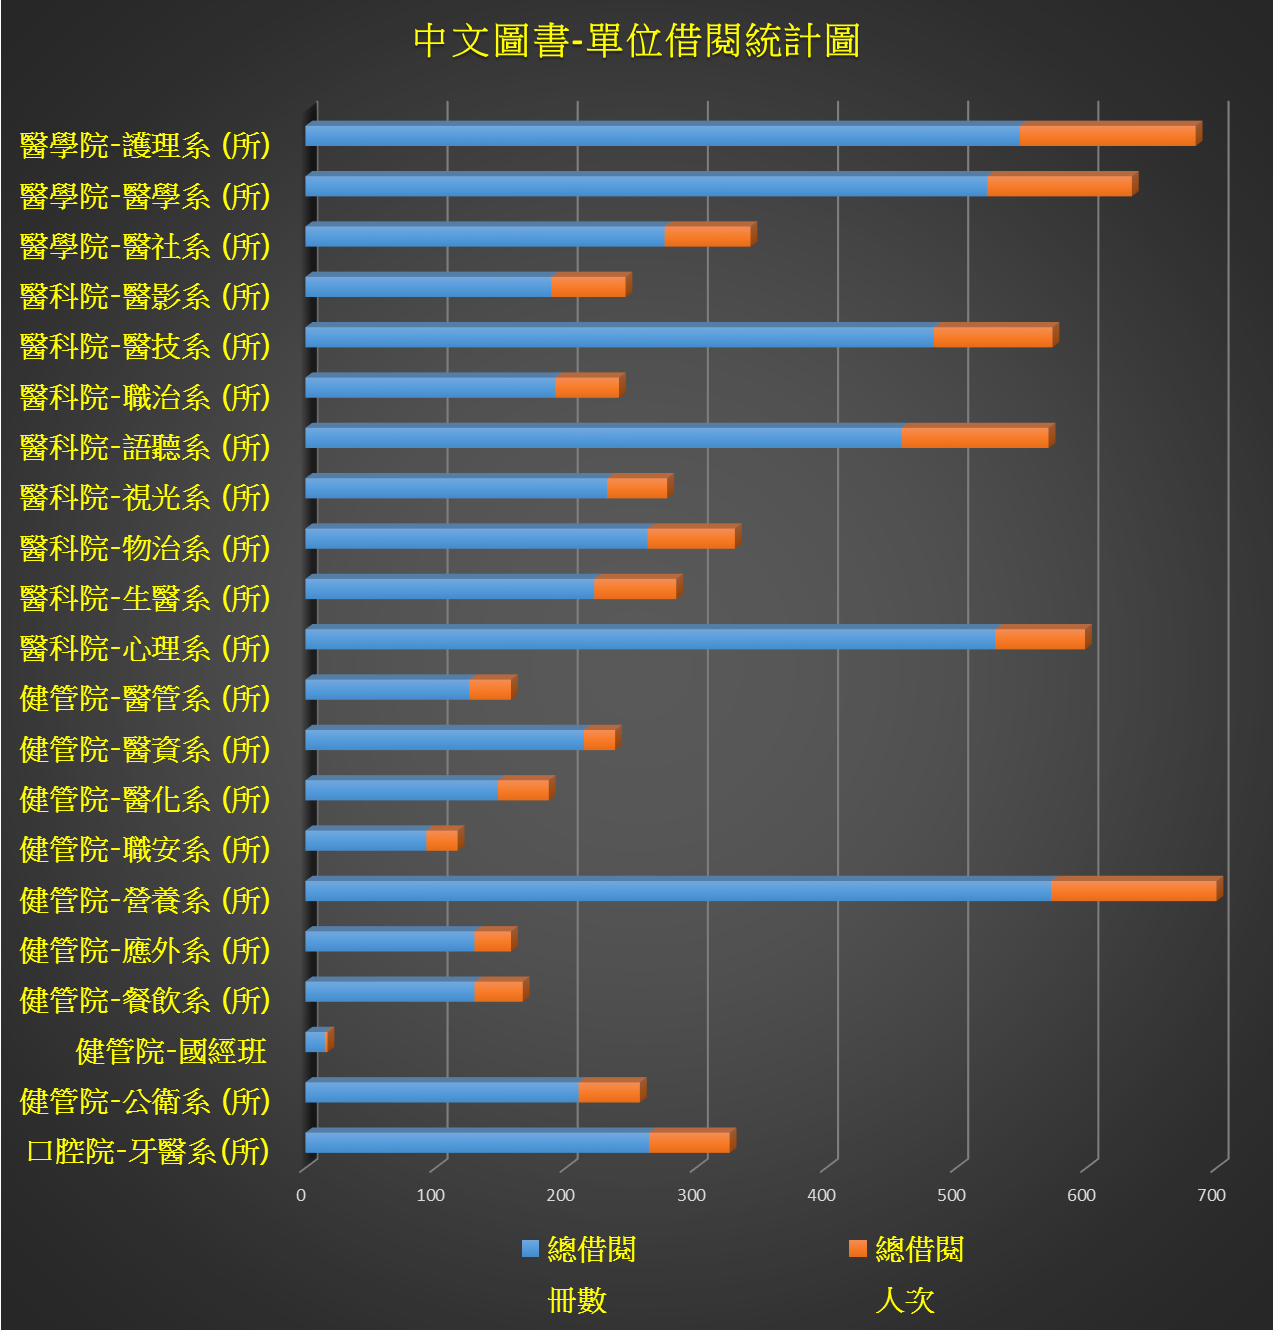 中文圖書單位借閱統計圖